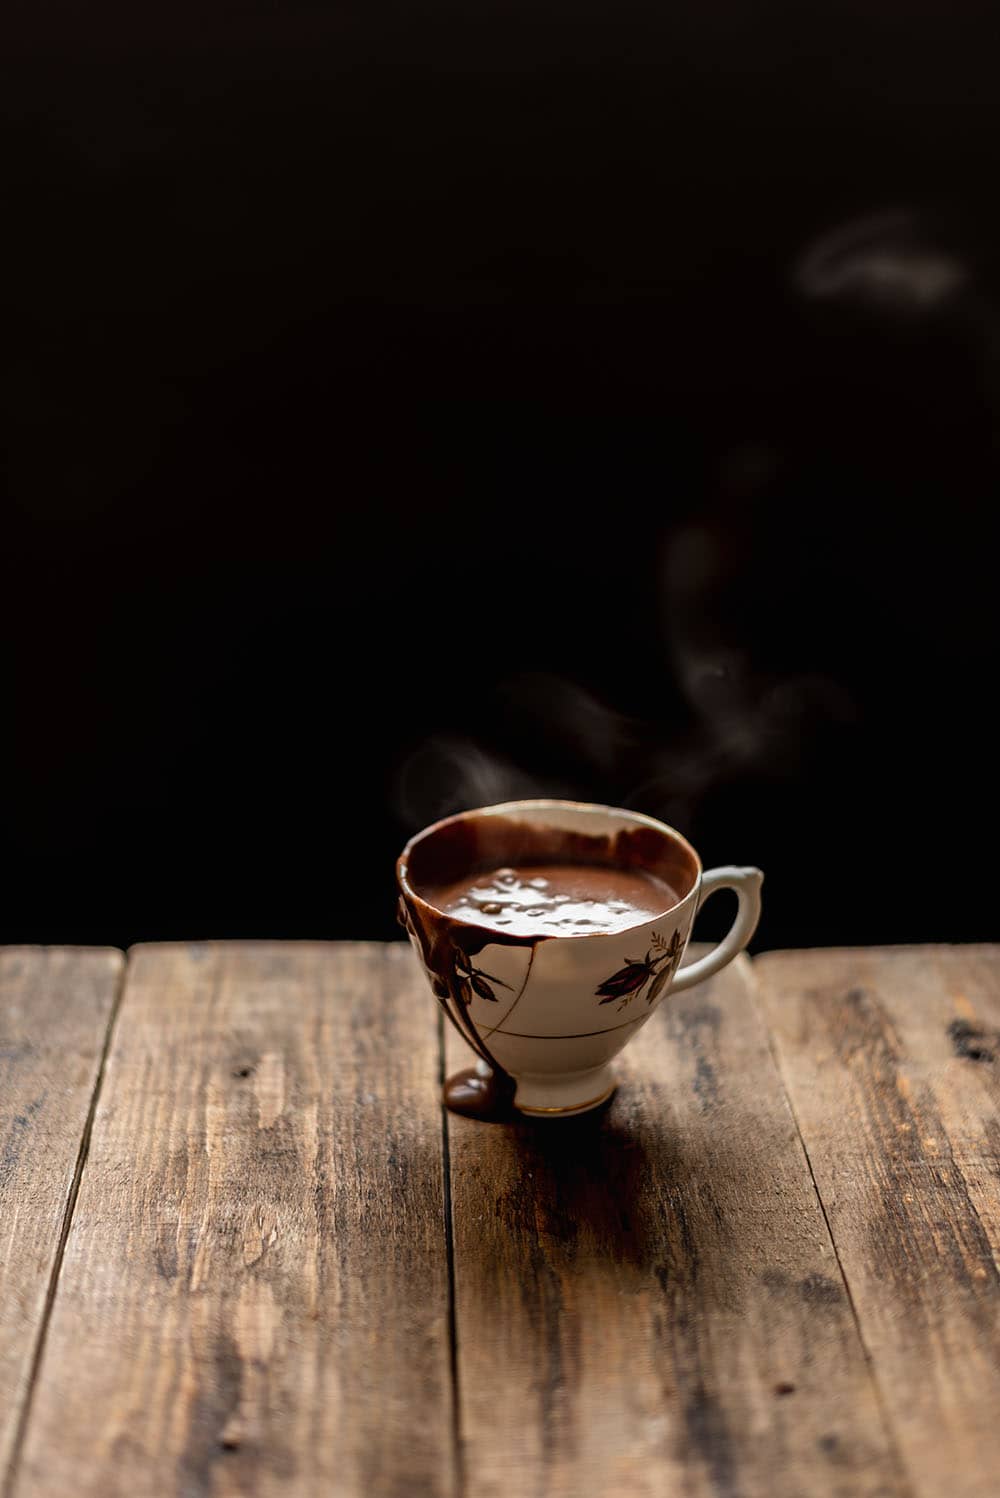 En una mesa de madera está una taza de chocolate caliente humeando.